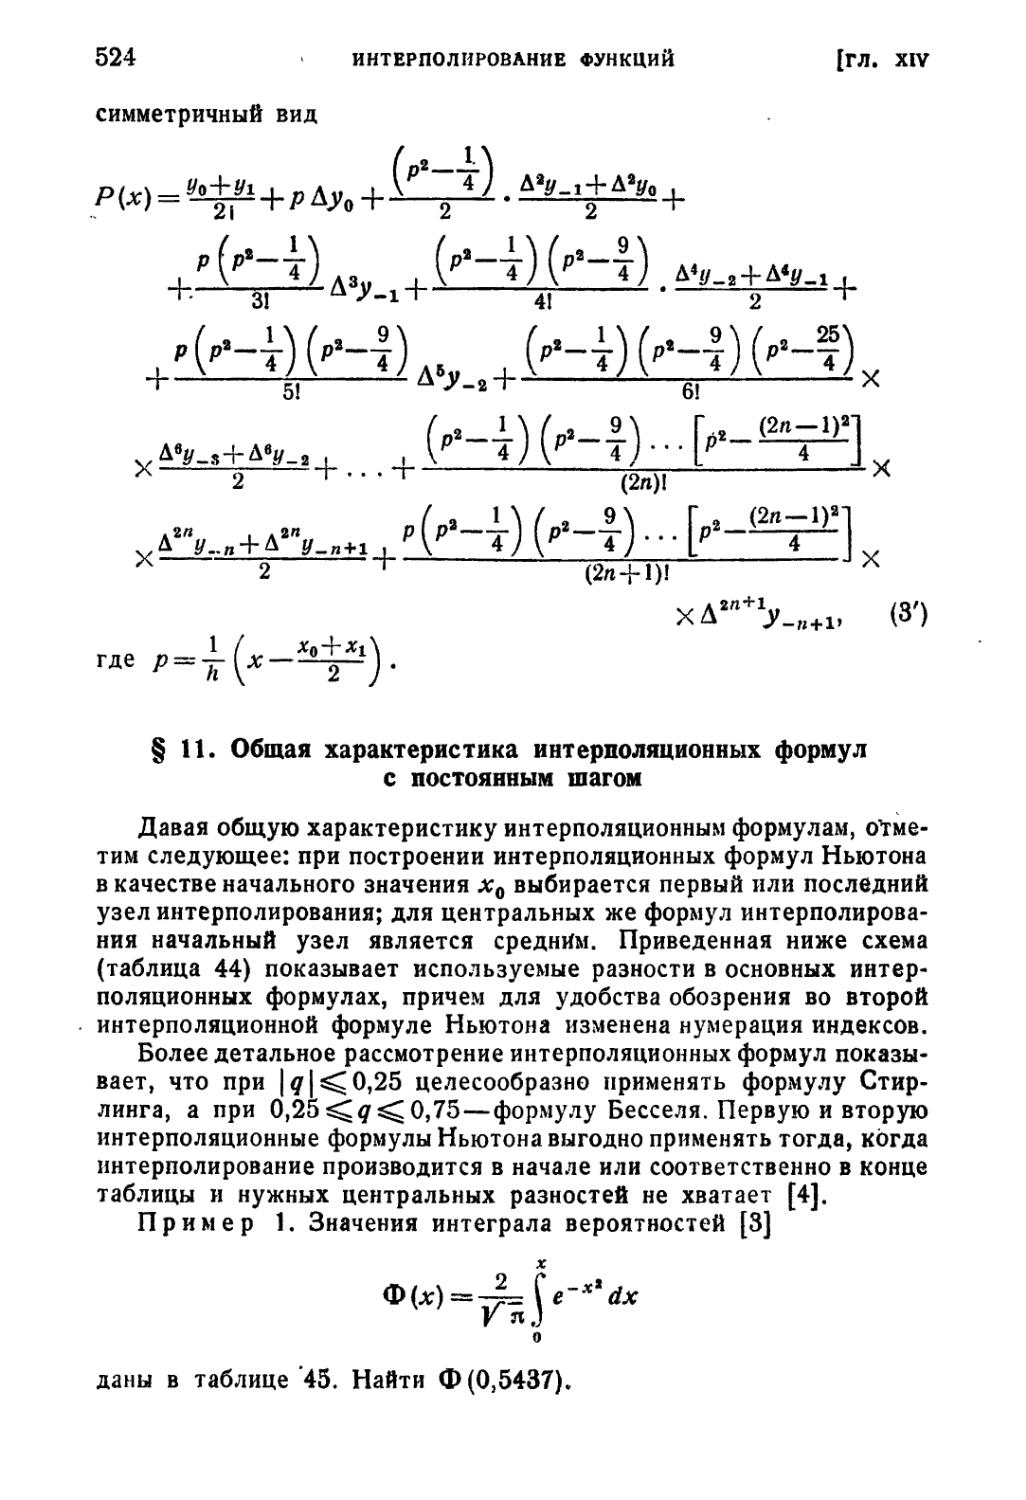 § 11. Общая характеристика интерполяционных формул с постоянным шагом